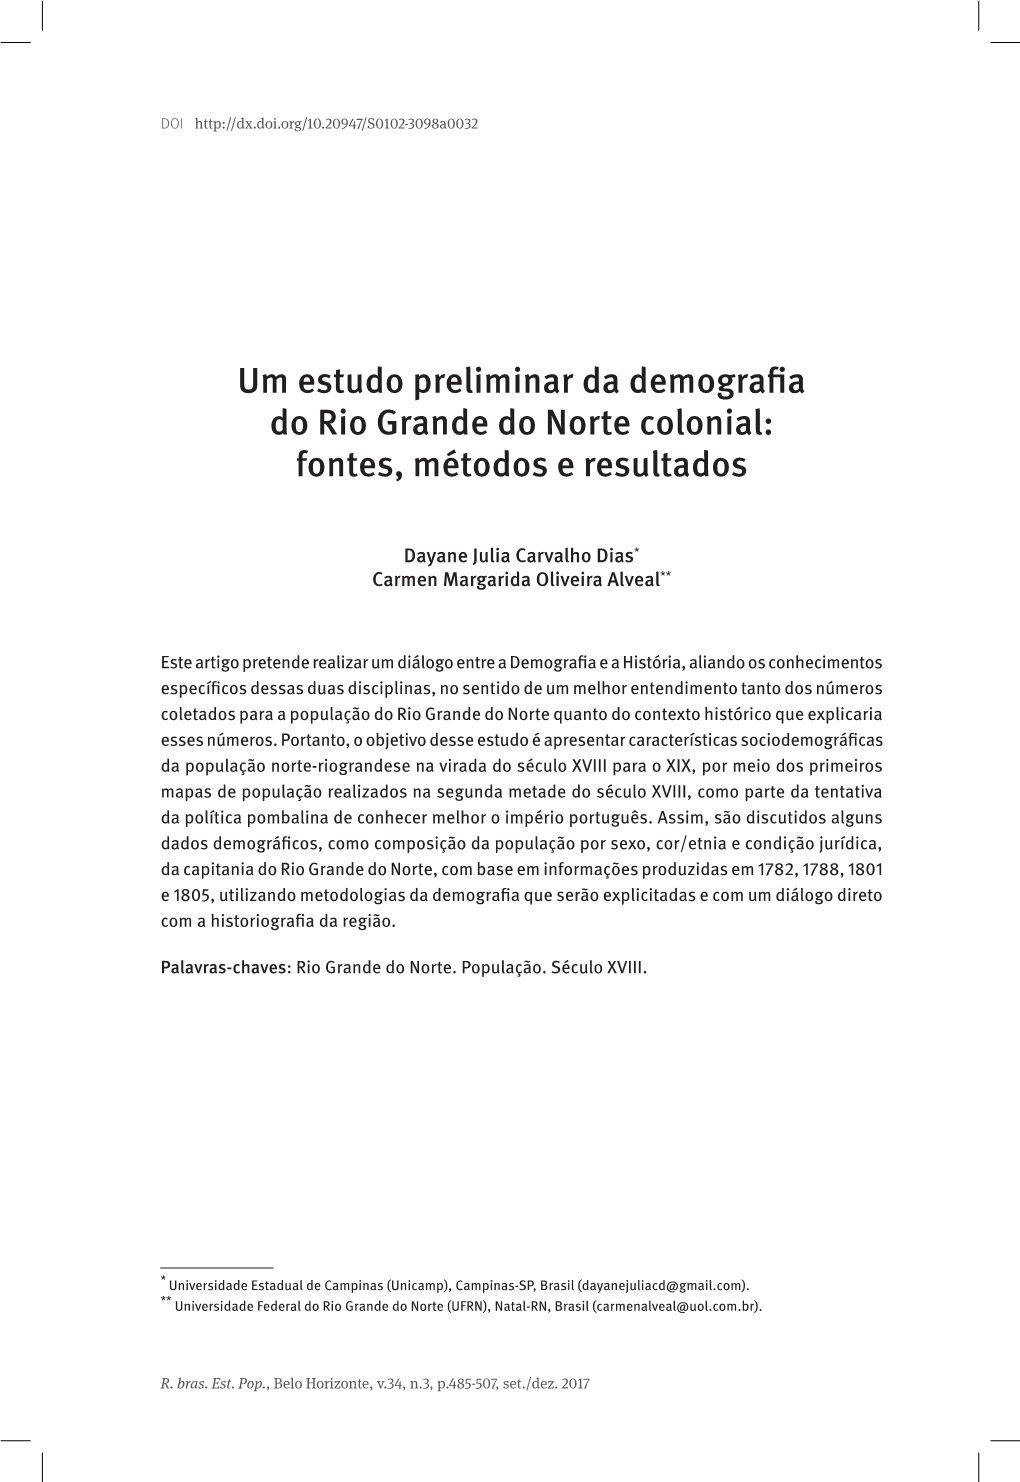 Um Estudo Preliminar Da Demografia Do Rio Grande Do Norte Colonial: Fontes, Métodos E Resultados